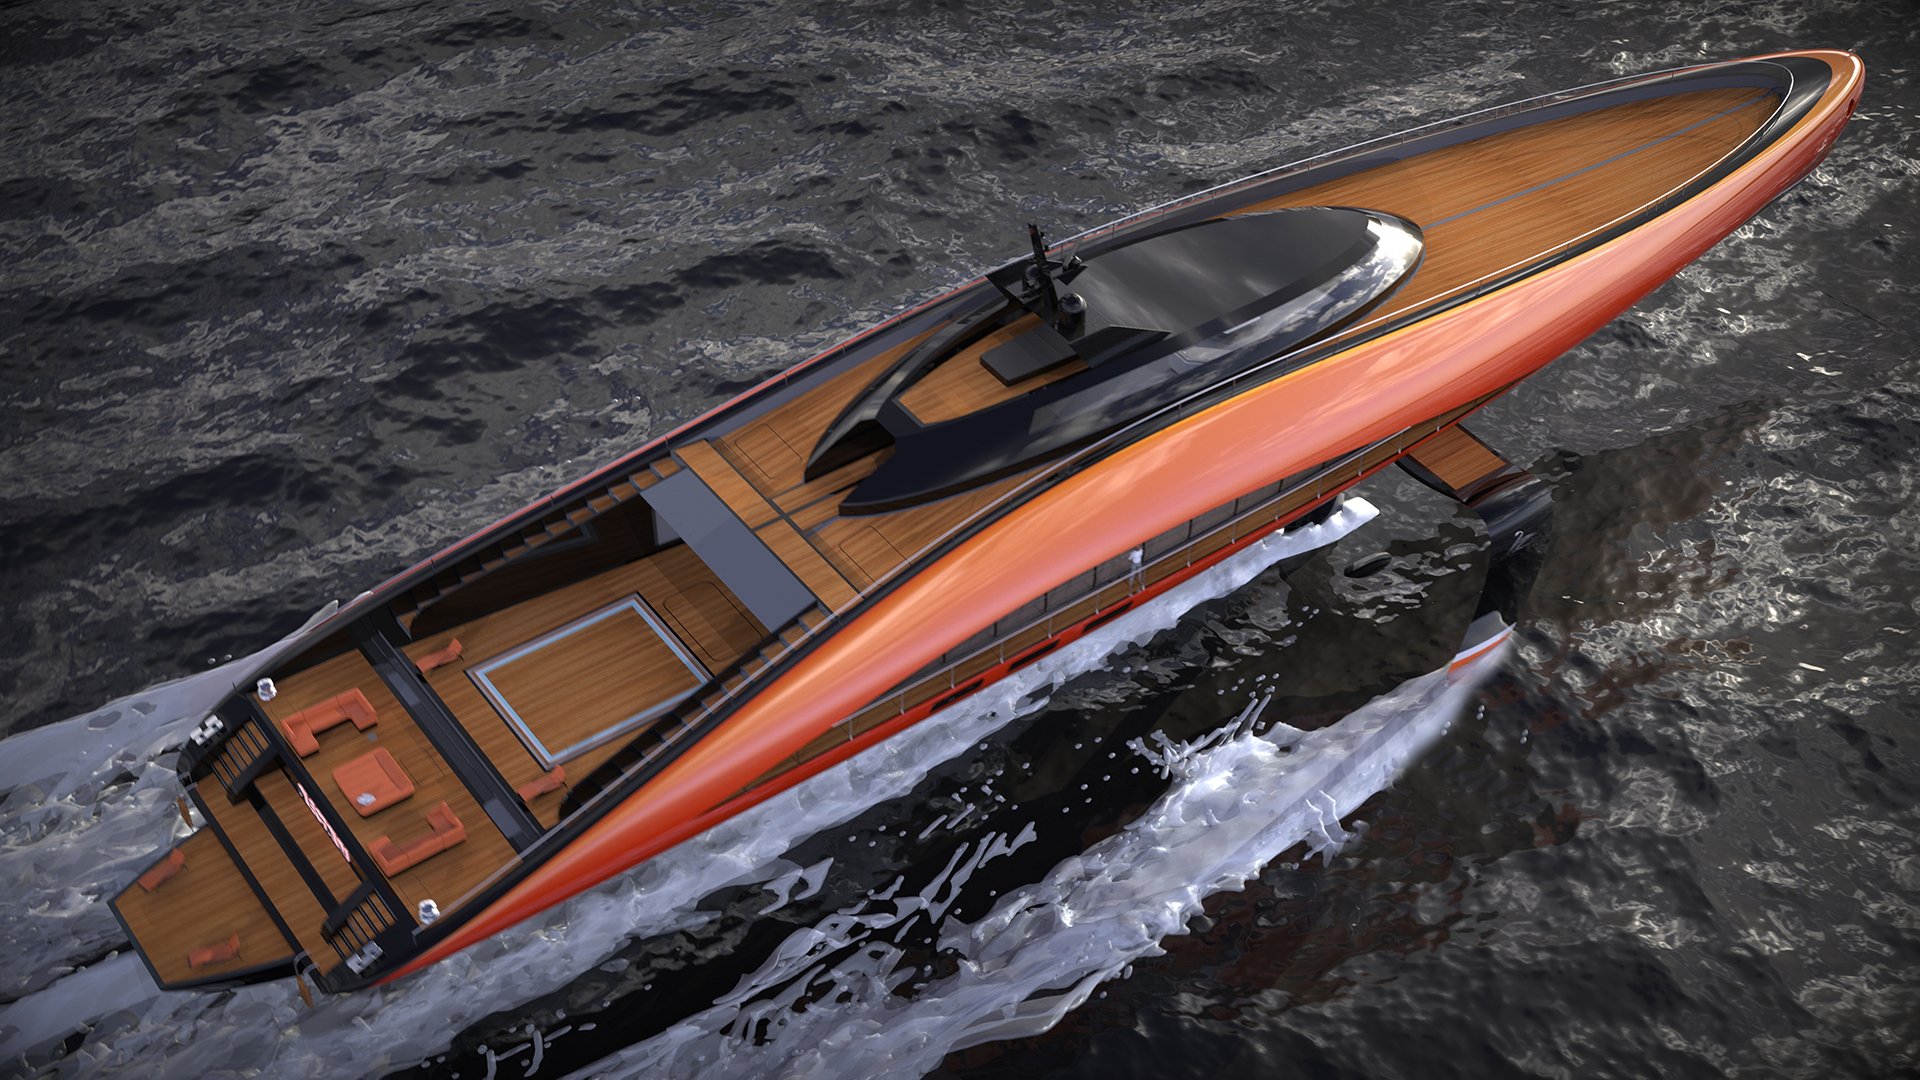 imagen 3 de Plectrum Hydrofoil Yacht, el diseño de Lazzarini que tiene todo lo que puedas soñar en un yate de lujo.